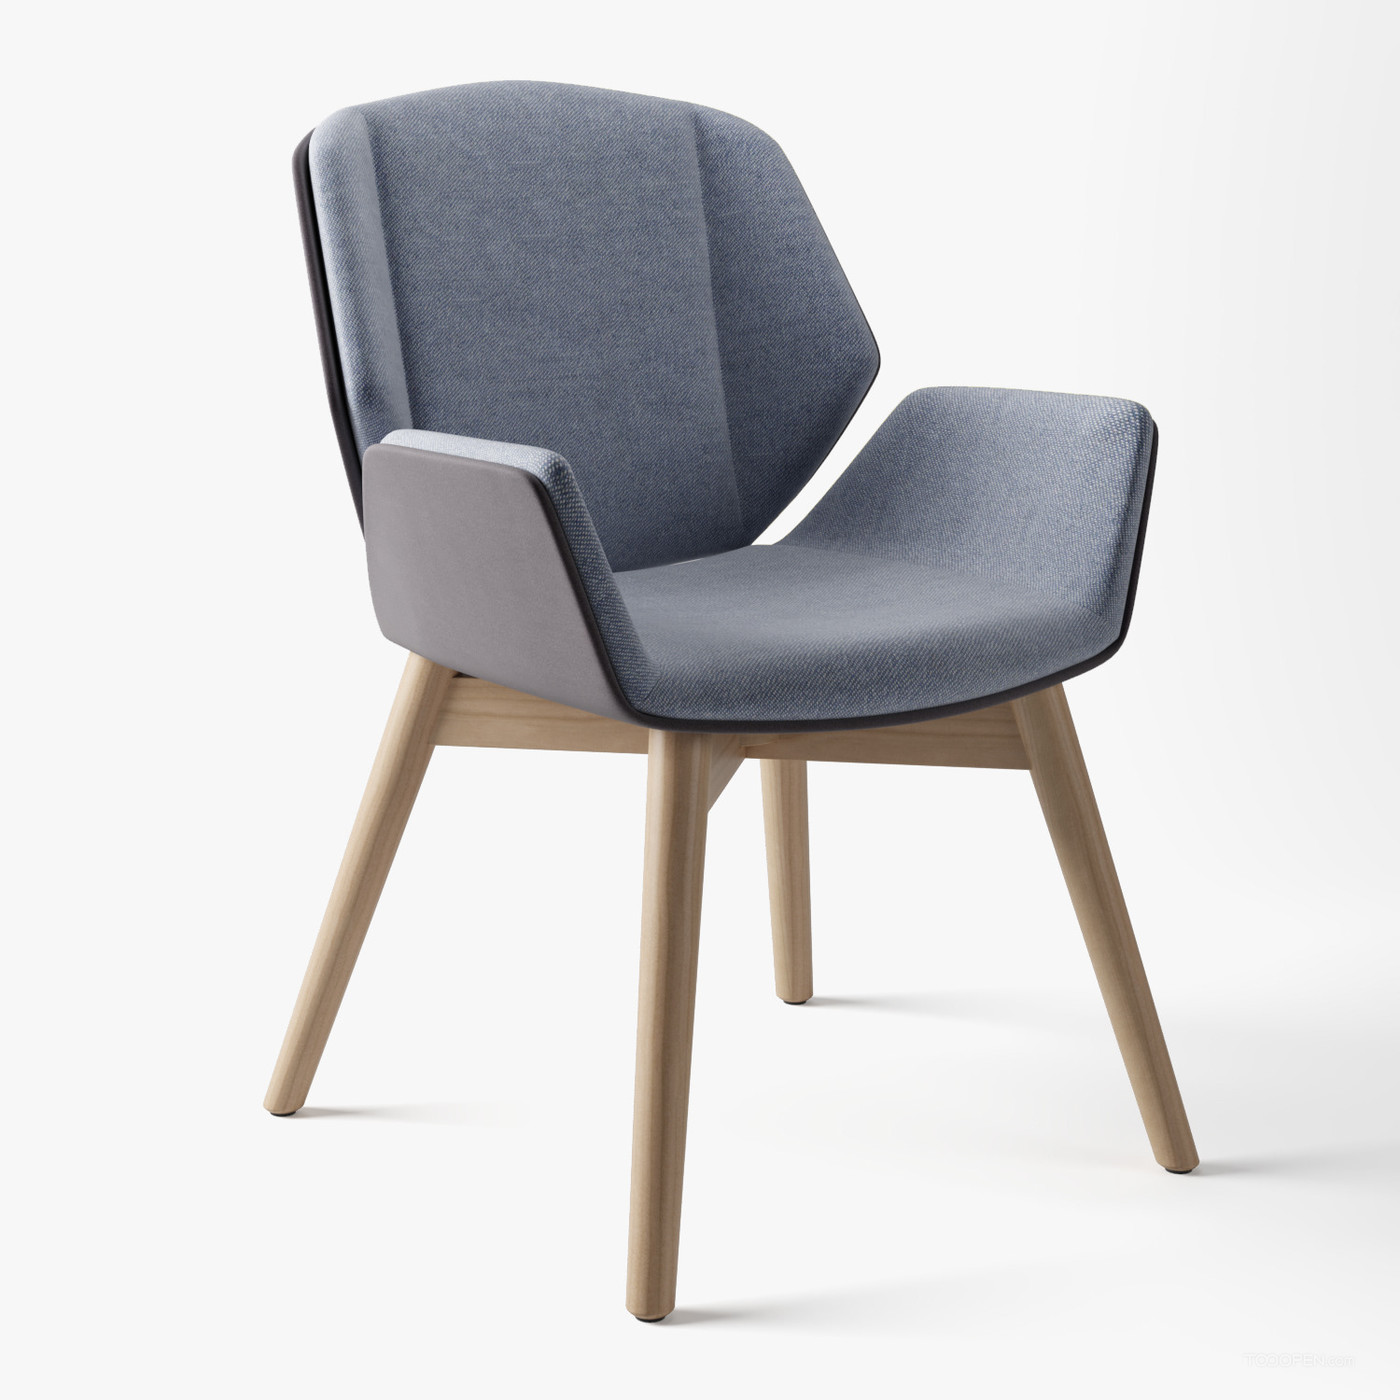 时尚简约风格的椅子家具设计欣赏-02